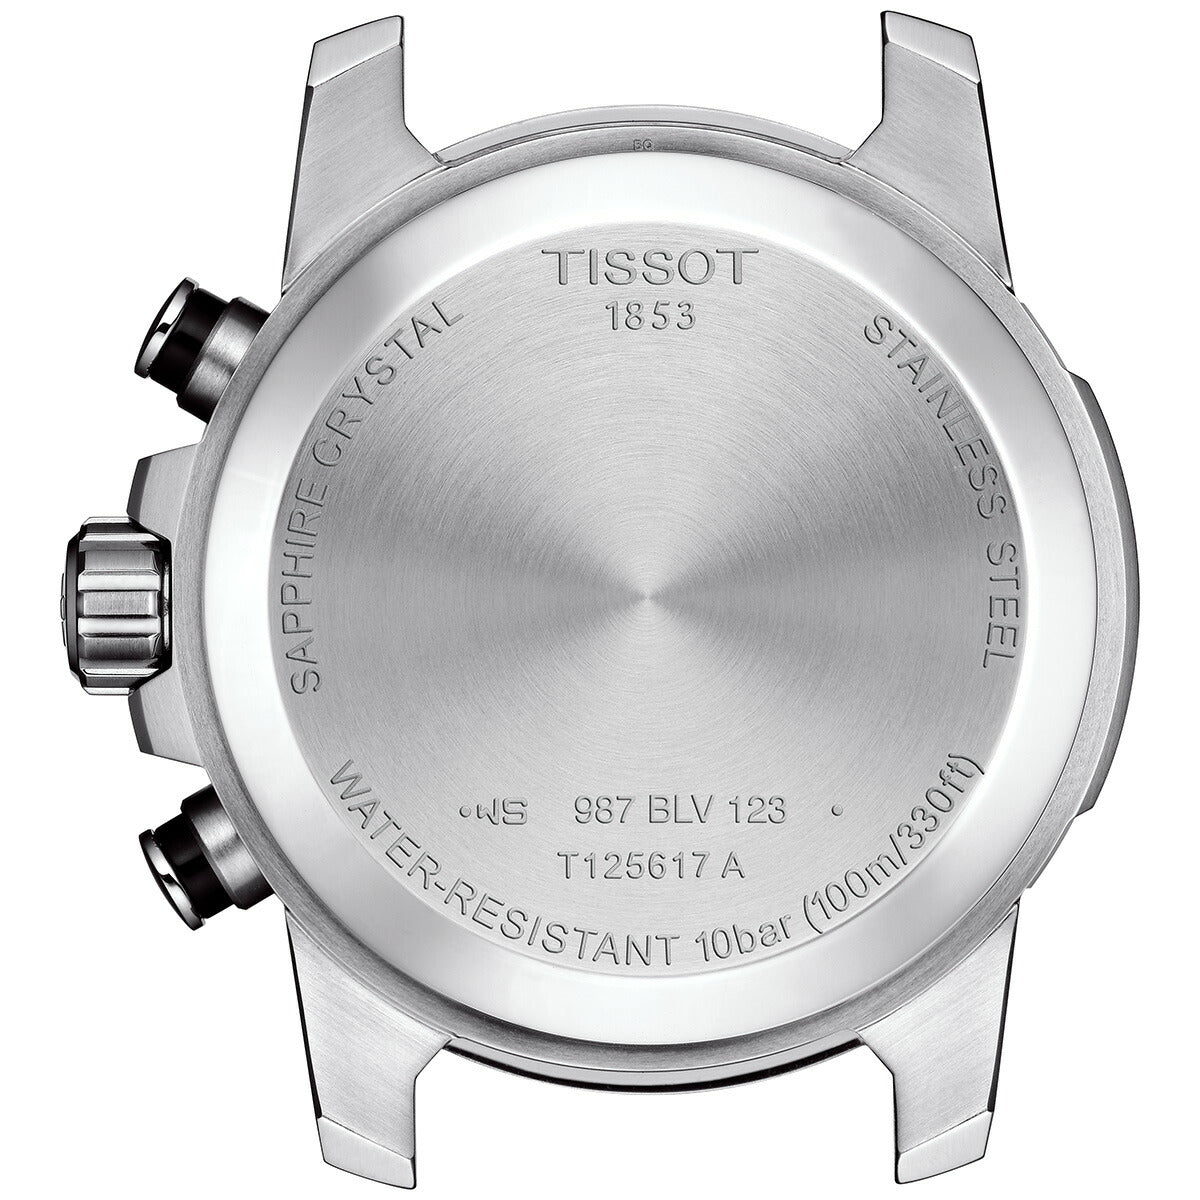 ティソ TISSOT 腕時計 メンズ スーパースポーツ クロノ SUPERSPORT CHRONO クロノグラフ T125.617.16.041.00